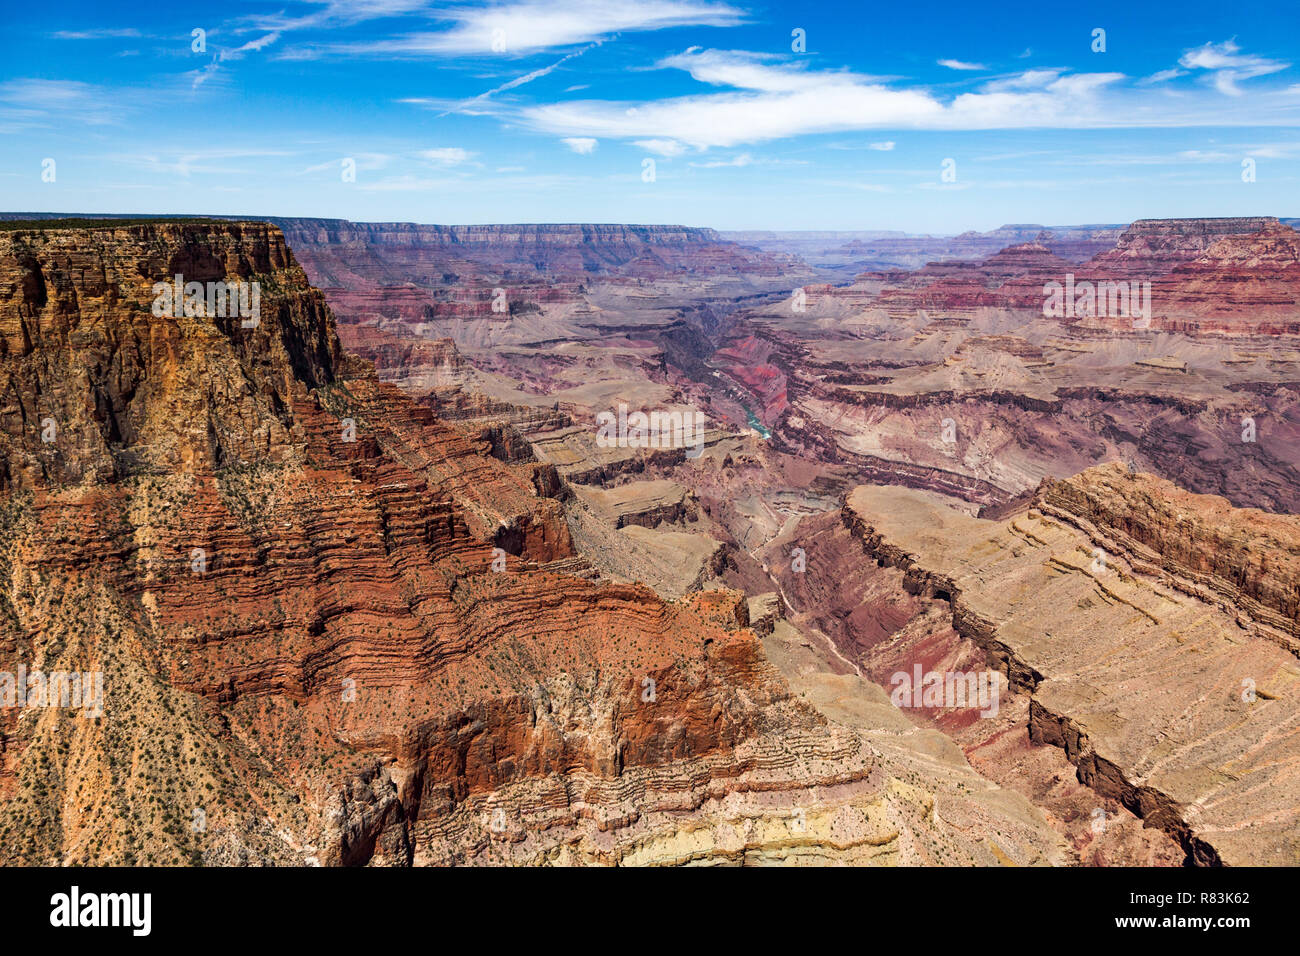 South Rim Grand canyon creusé par le fleuve Colorado dans l'Arizona, a bandes superposées de red rock révélant des millions d'années d'histoire géologique. Viewp Banque D'Images